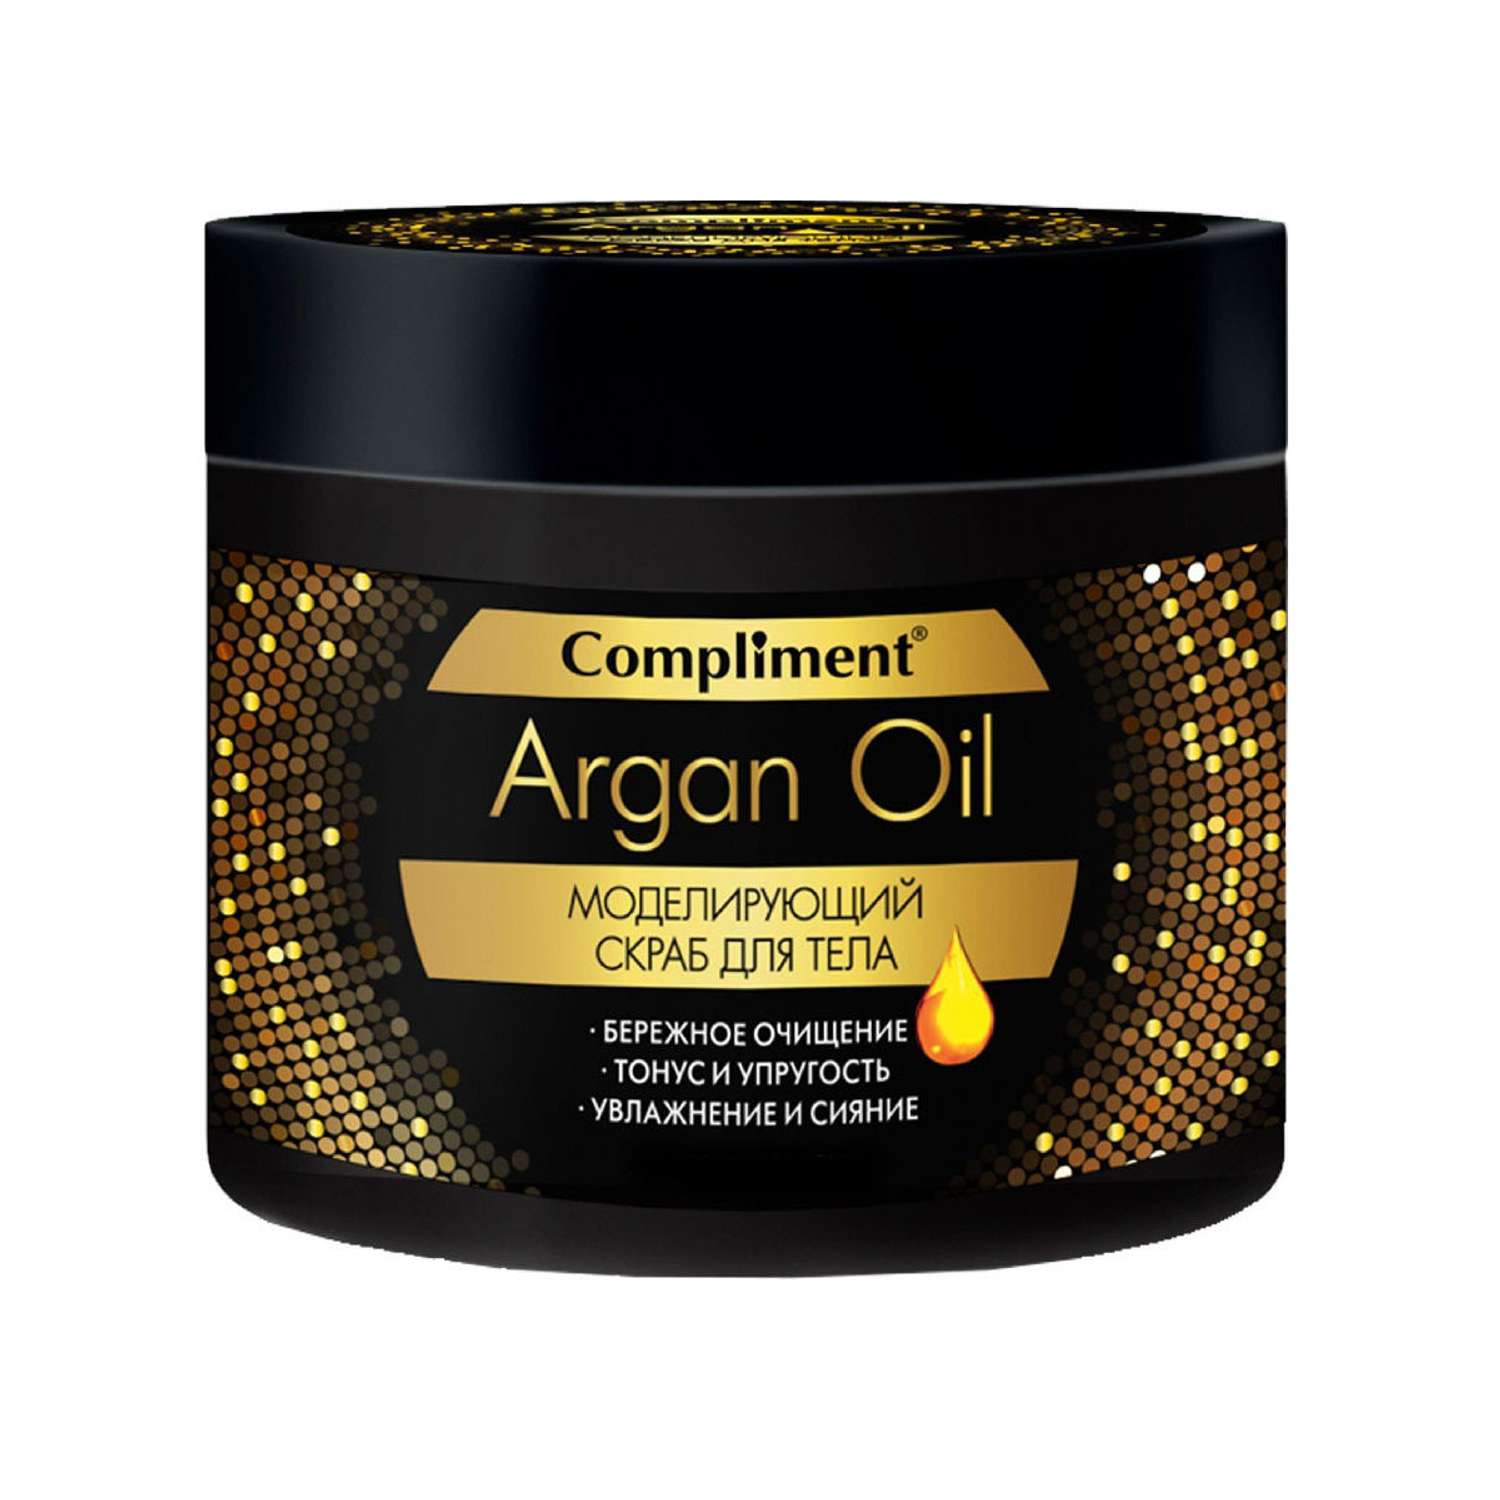 Скраб Compliment Argan Oil для тела моделирующий 300мл - фото 1